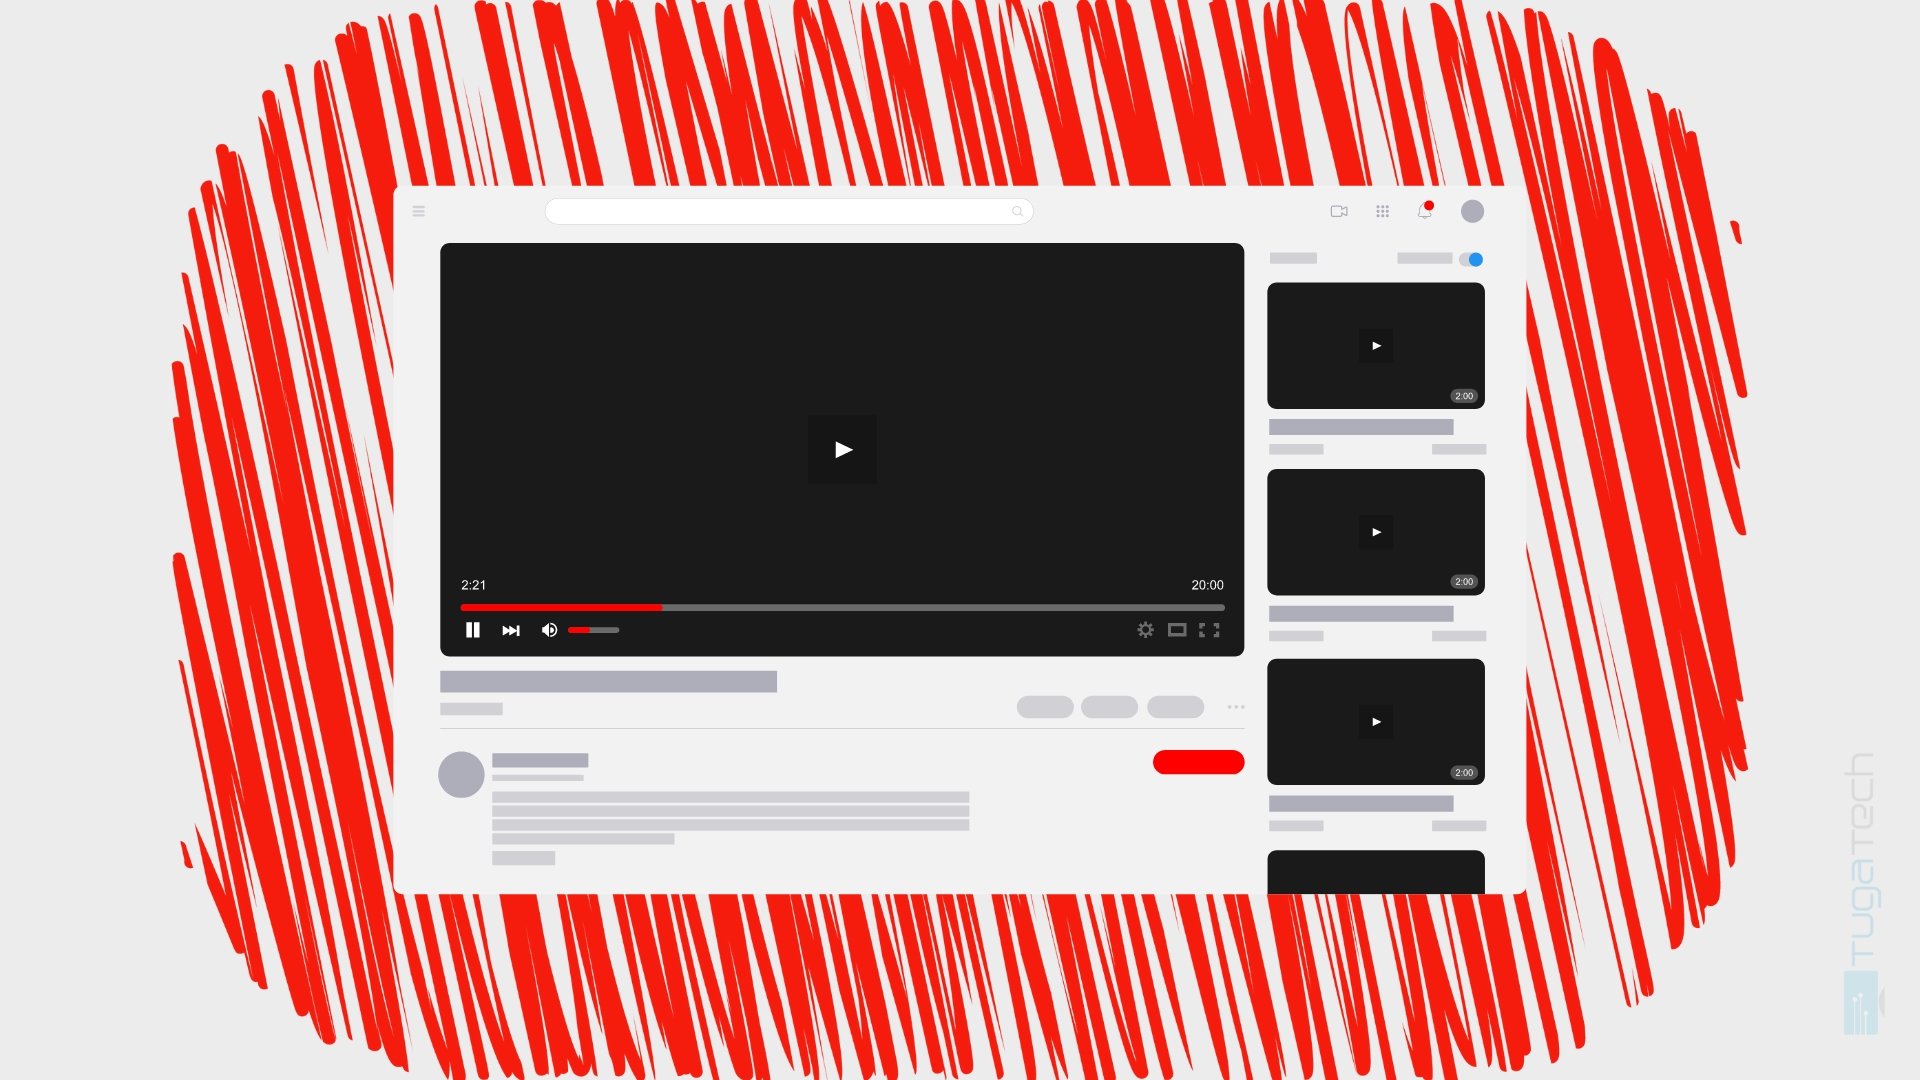 Youtube testa função para “saltar” partes menos importantes dos vídeos